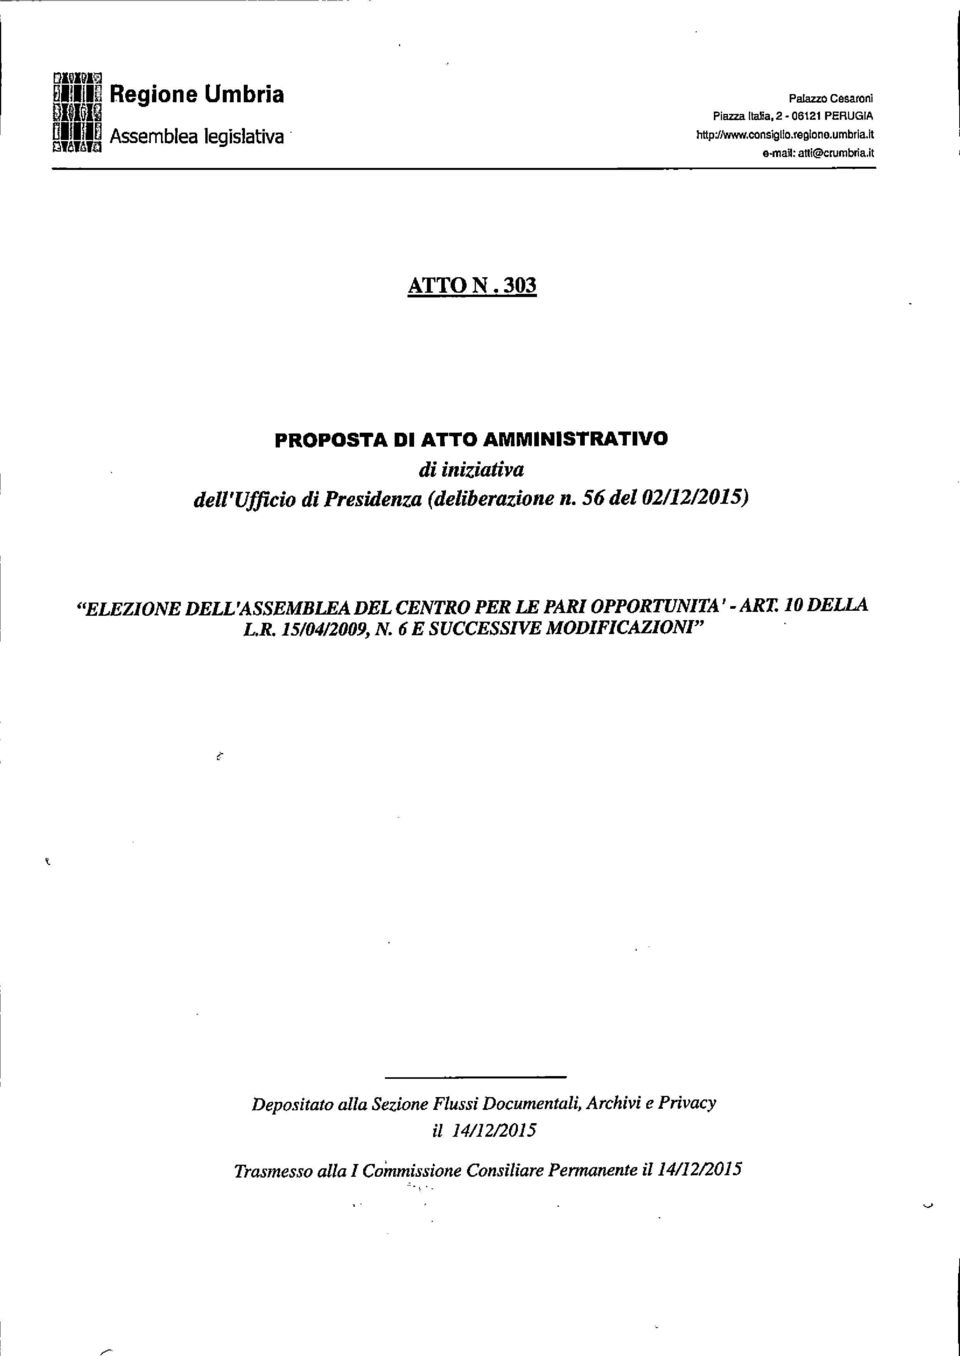 56 del 0211212015) "ELEZIONEDELL'ASSEMBLEADELCENTRO PER LE PARI OPPORTUNITÀ' - ART 10 DELLA L.R. 15/0412009, N.